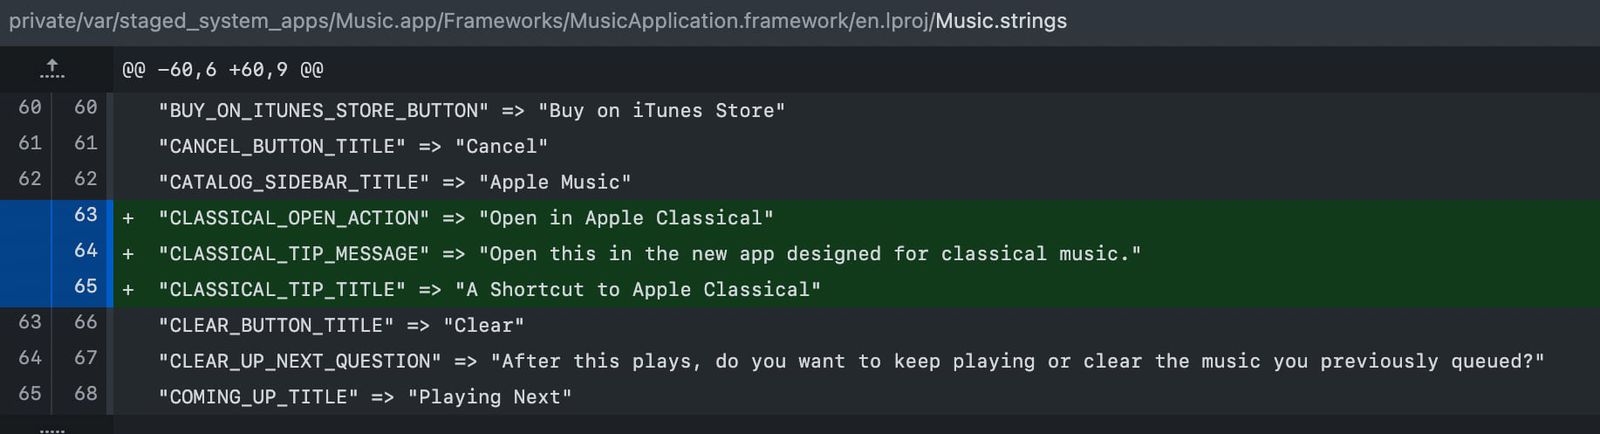 Referência ao "Apple Classical"